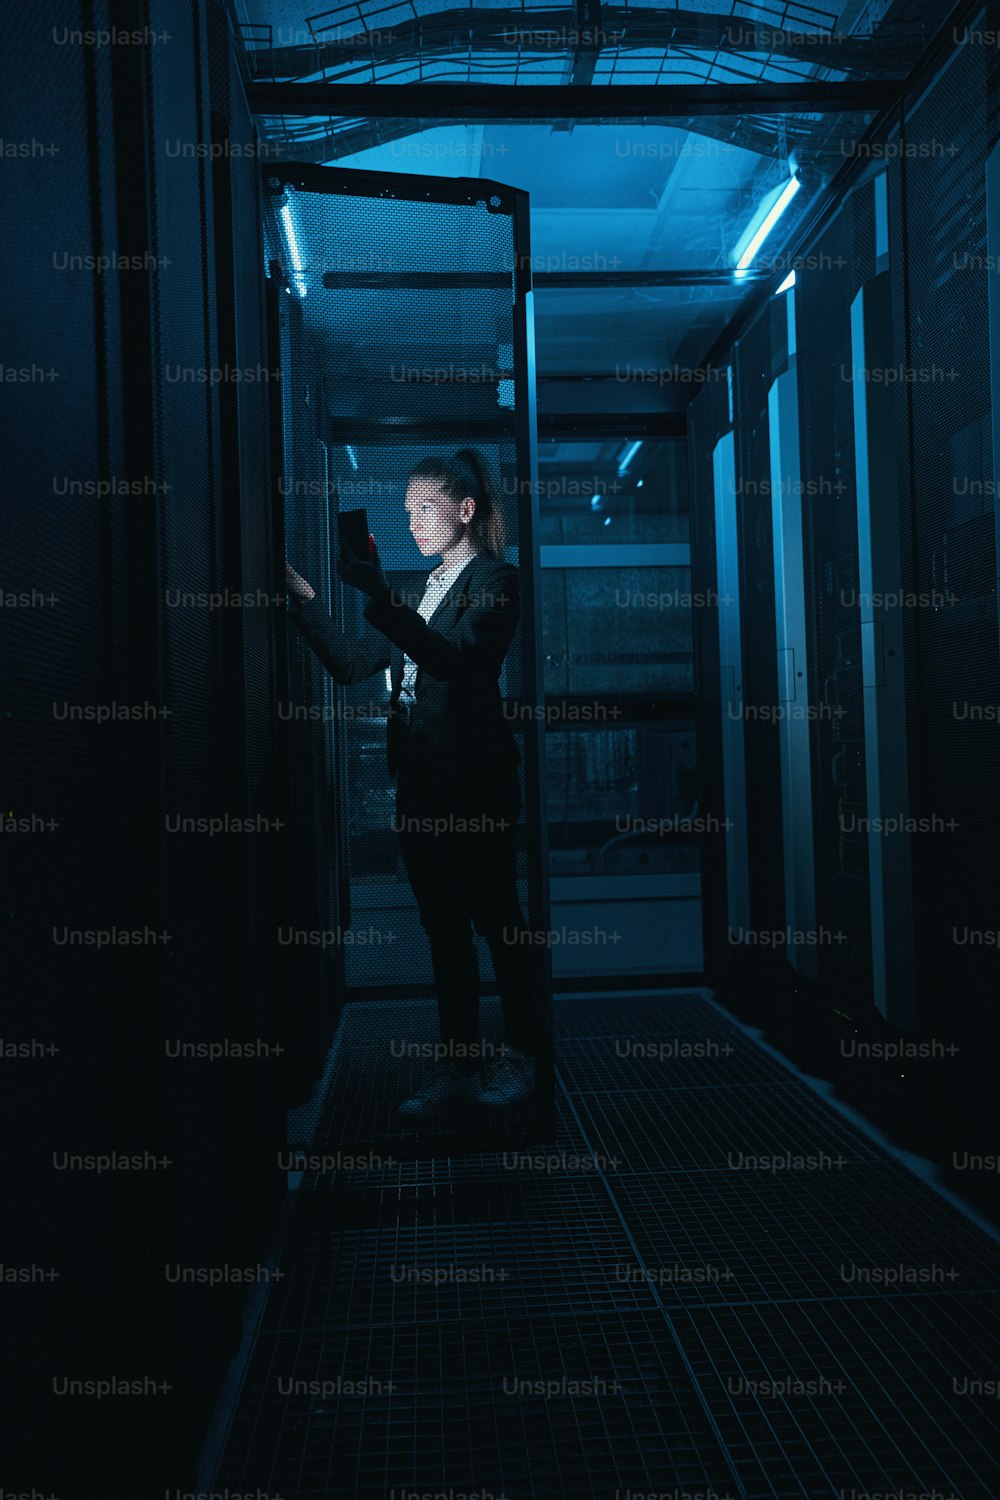 데이터 센터의 어두운 방에서 서버 랙에서 하드웨어를 확인하는 휴대폰을 가진 여성 IT 관리자